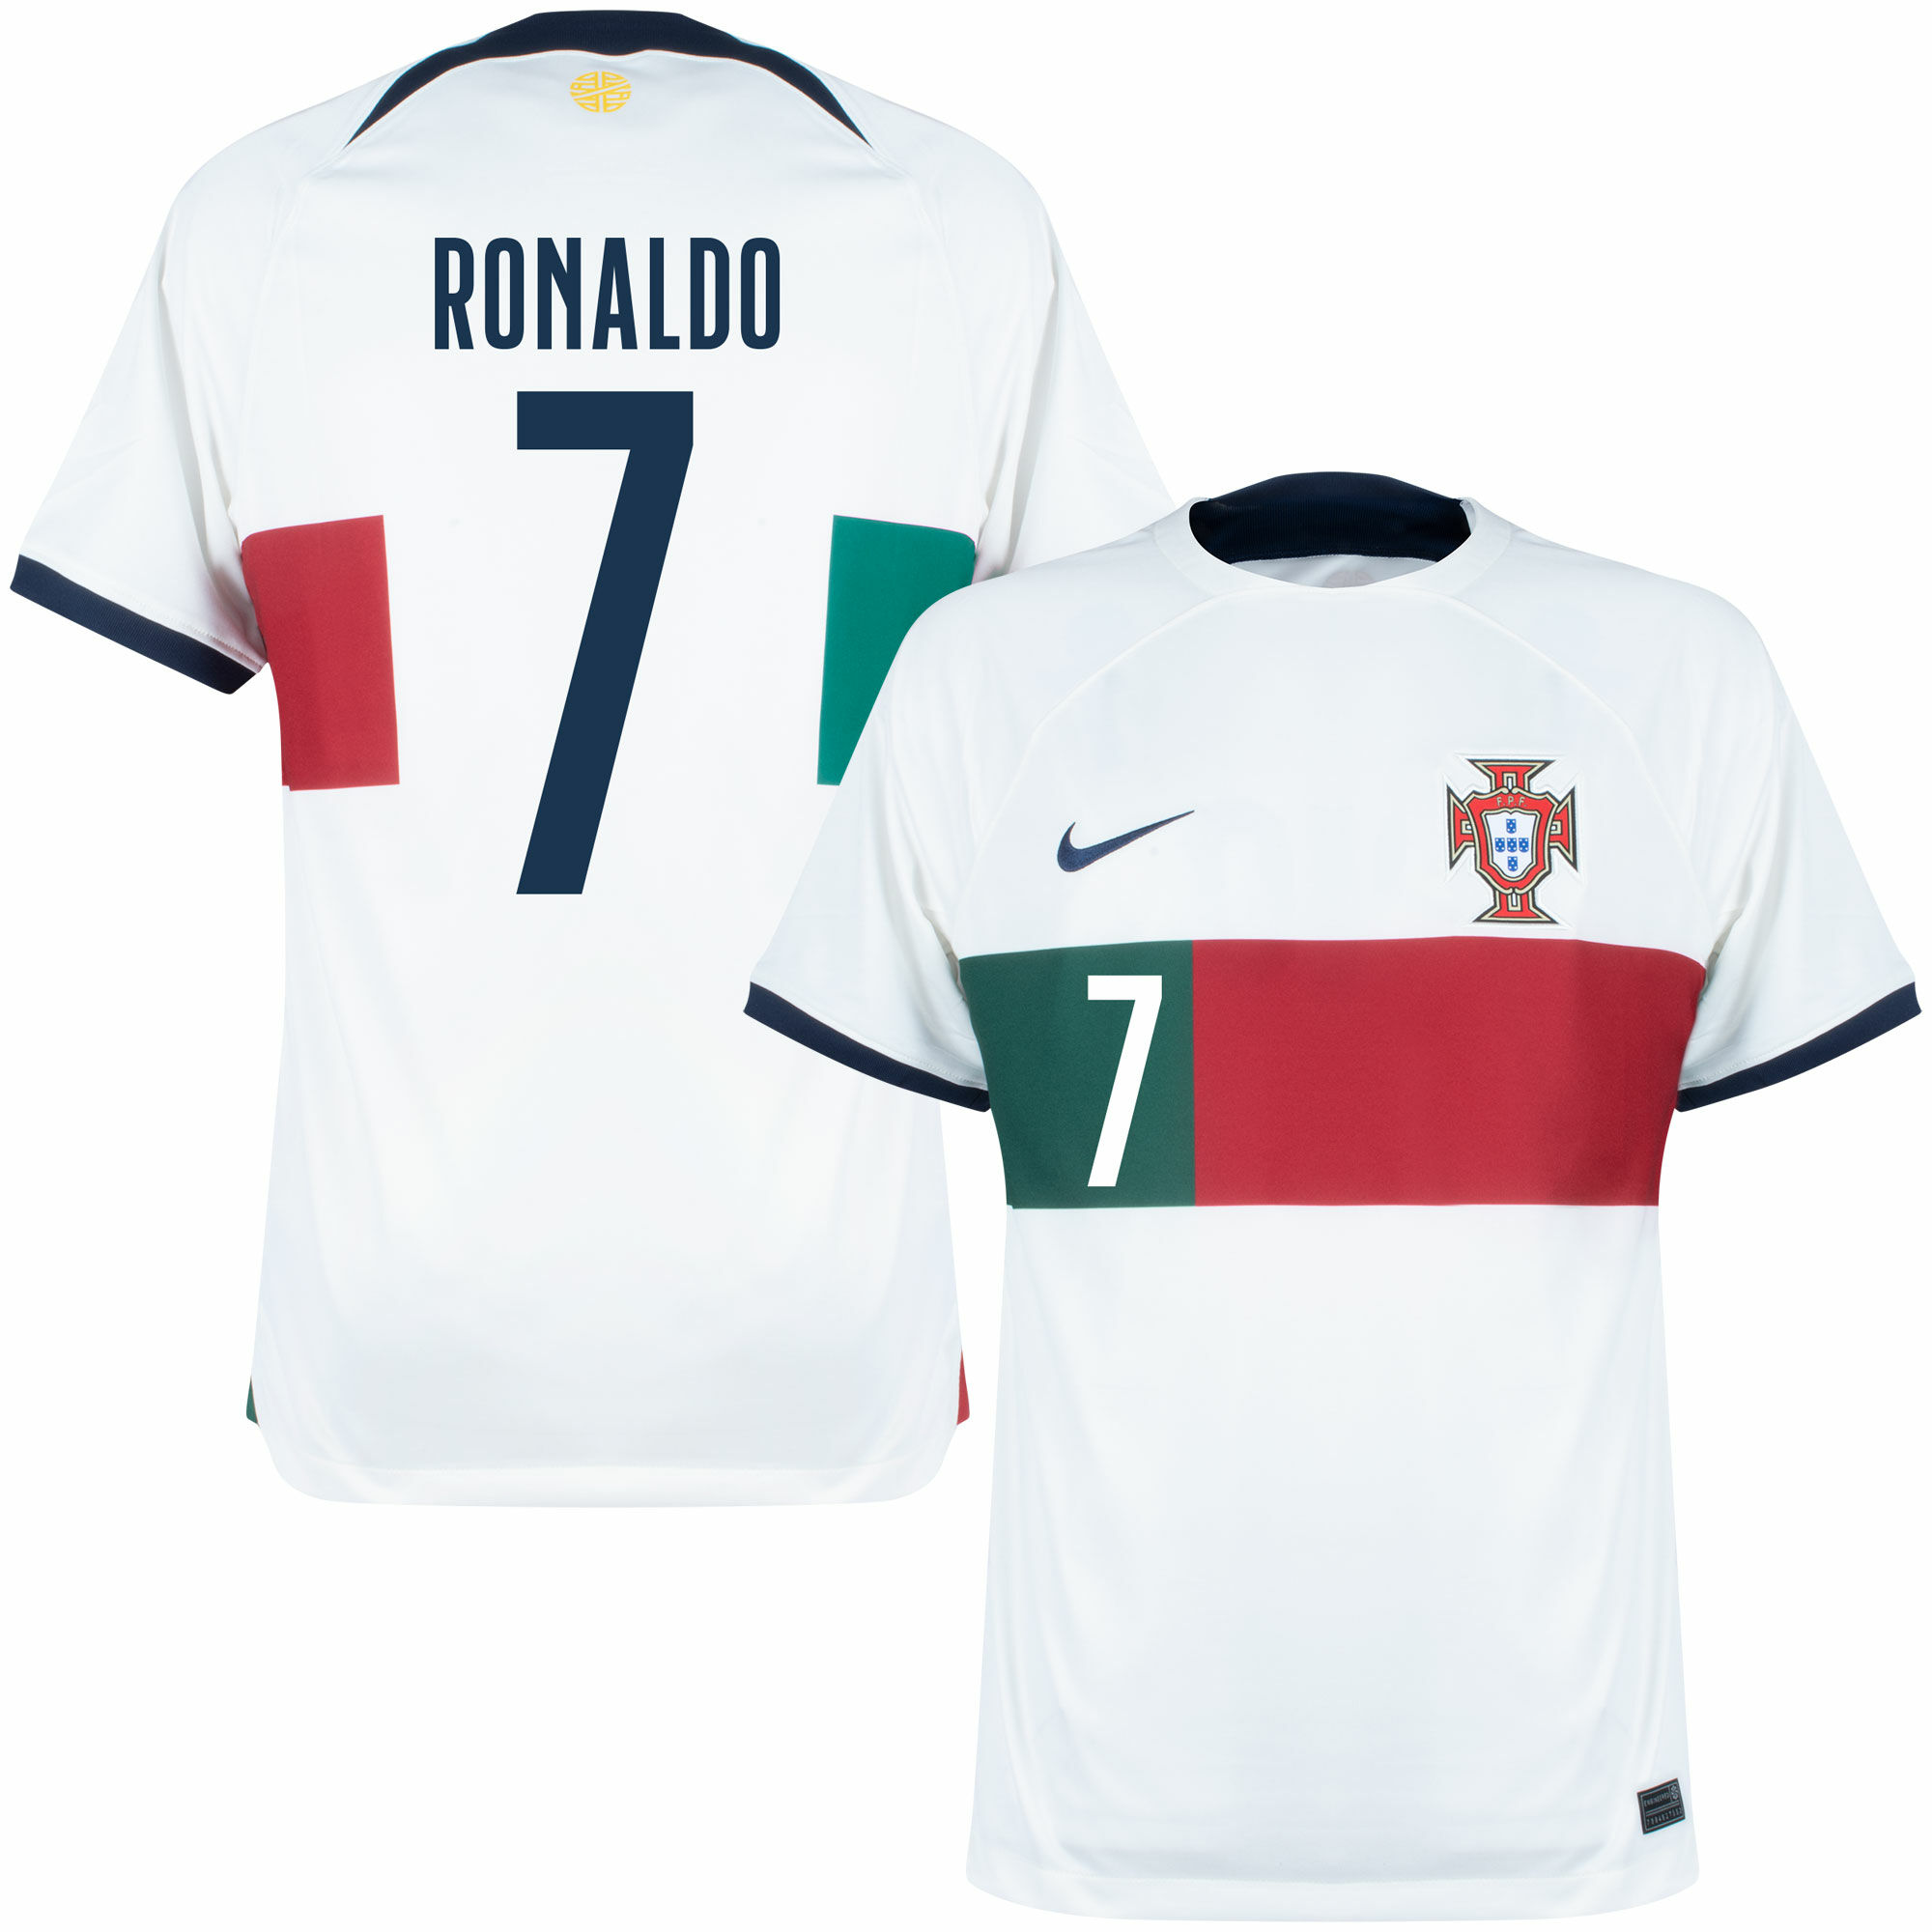 Portugalsko - Dres fotbalový - fan potisk, Ronaldo, bílý, sezóna 2022/23, číslo 7, venkovní